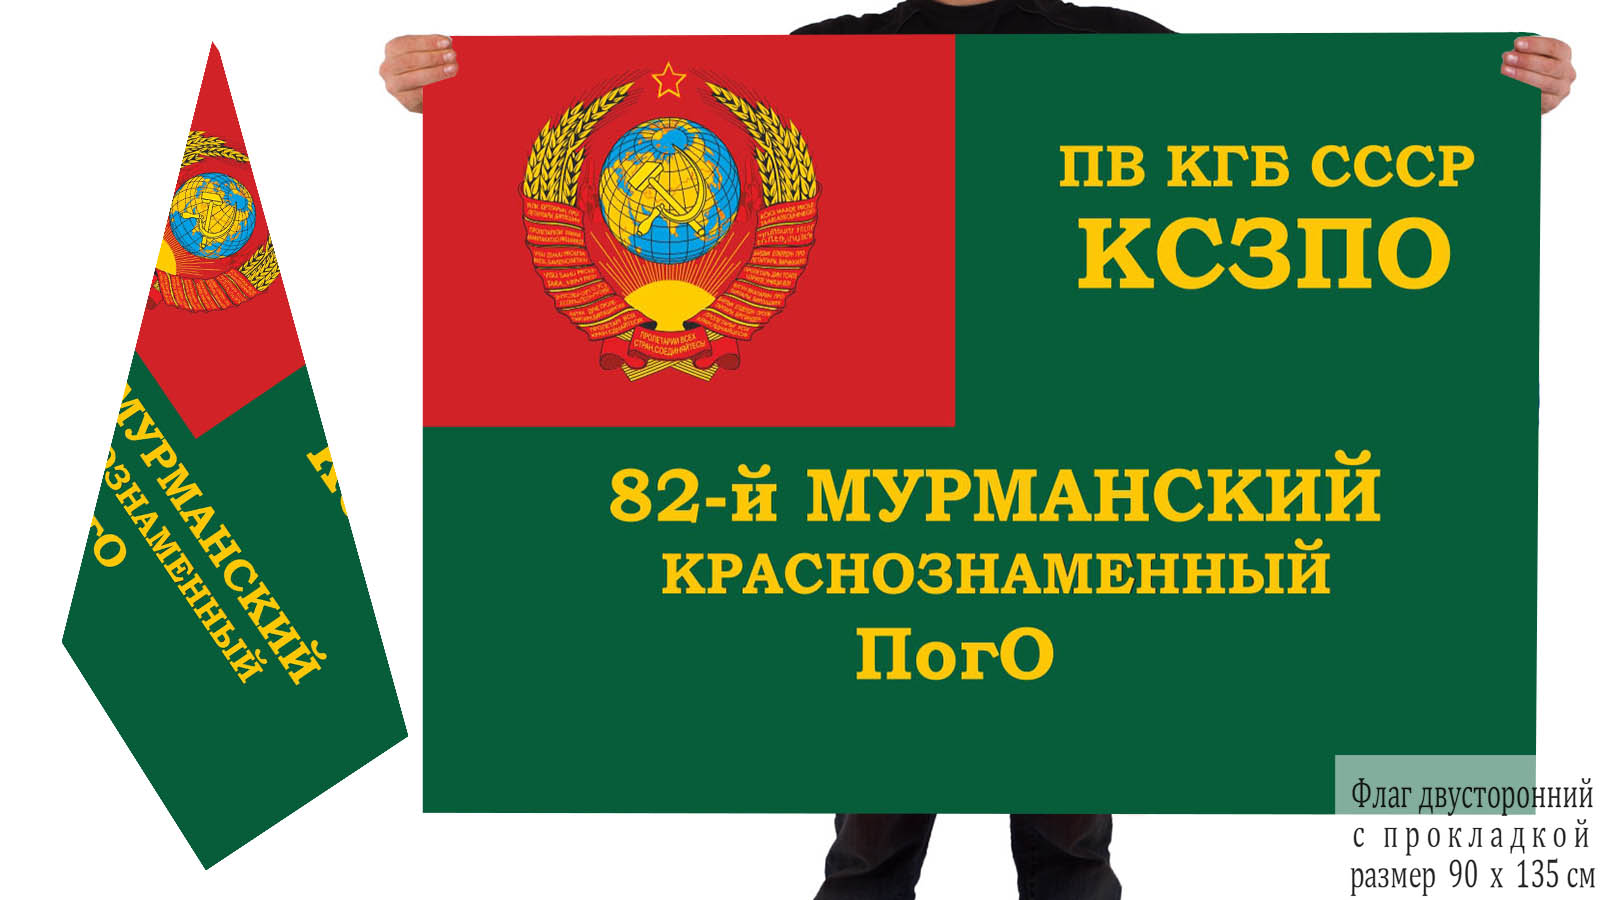 Двусторонний флаг 82 Мурманского Краснознамённого ПогО ПВ КГБ СССР